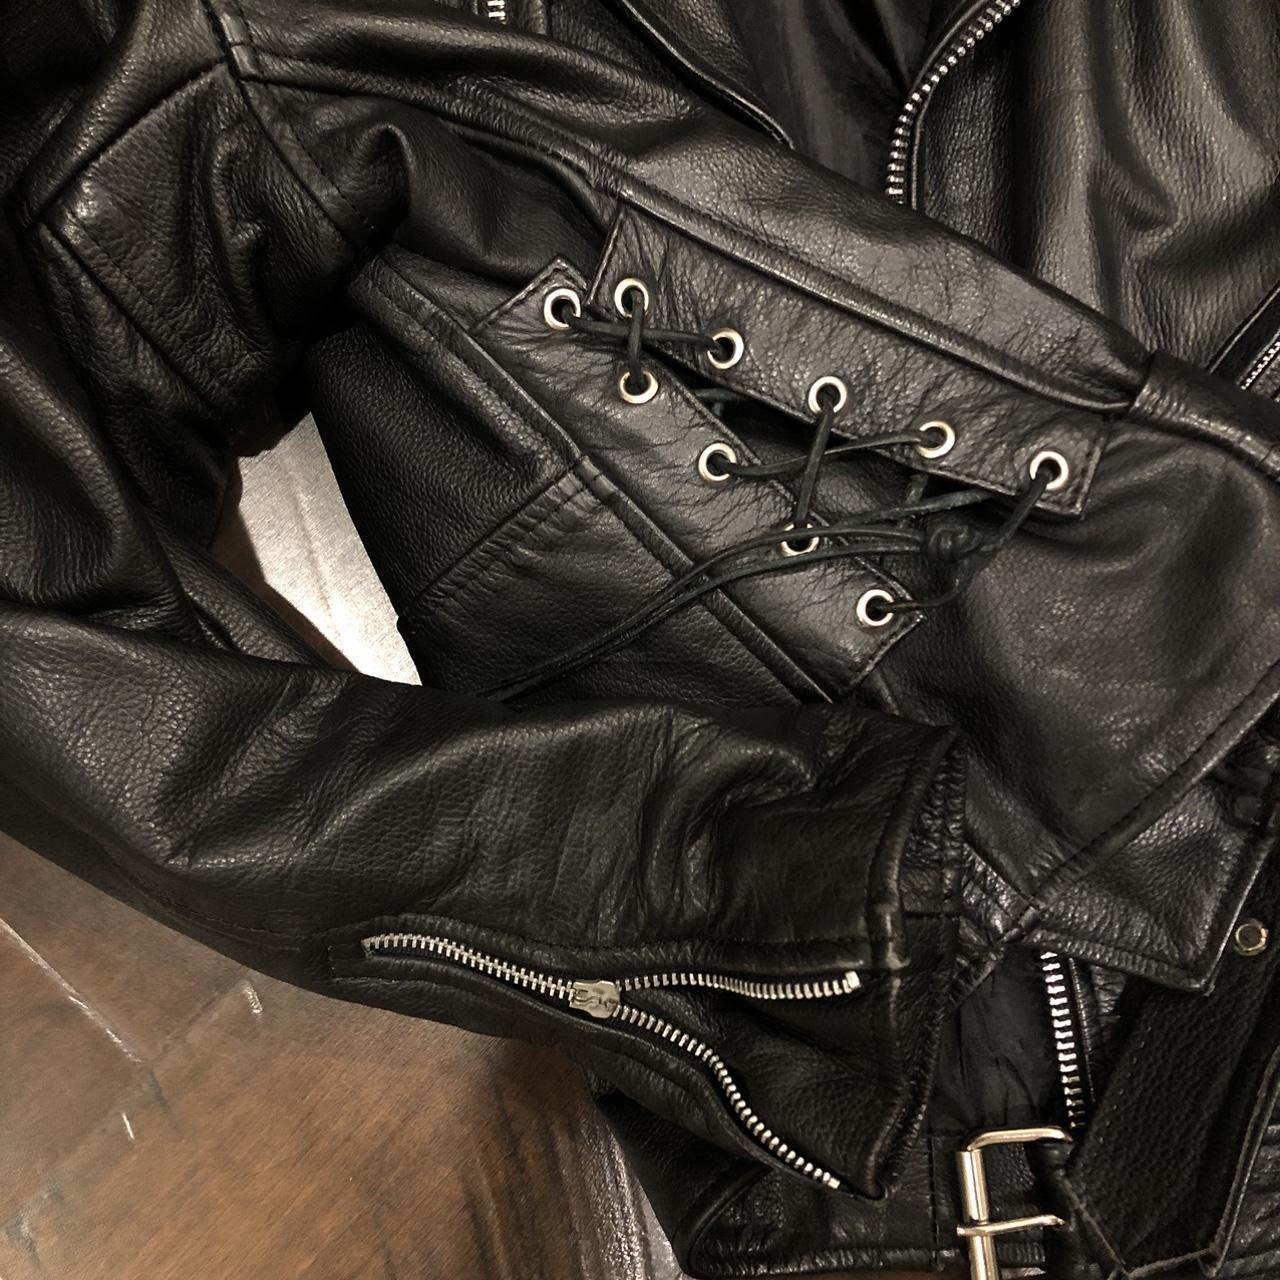 Heavy duty vintage men’s leather jacket in great... - Depop